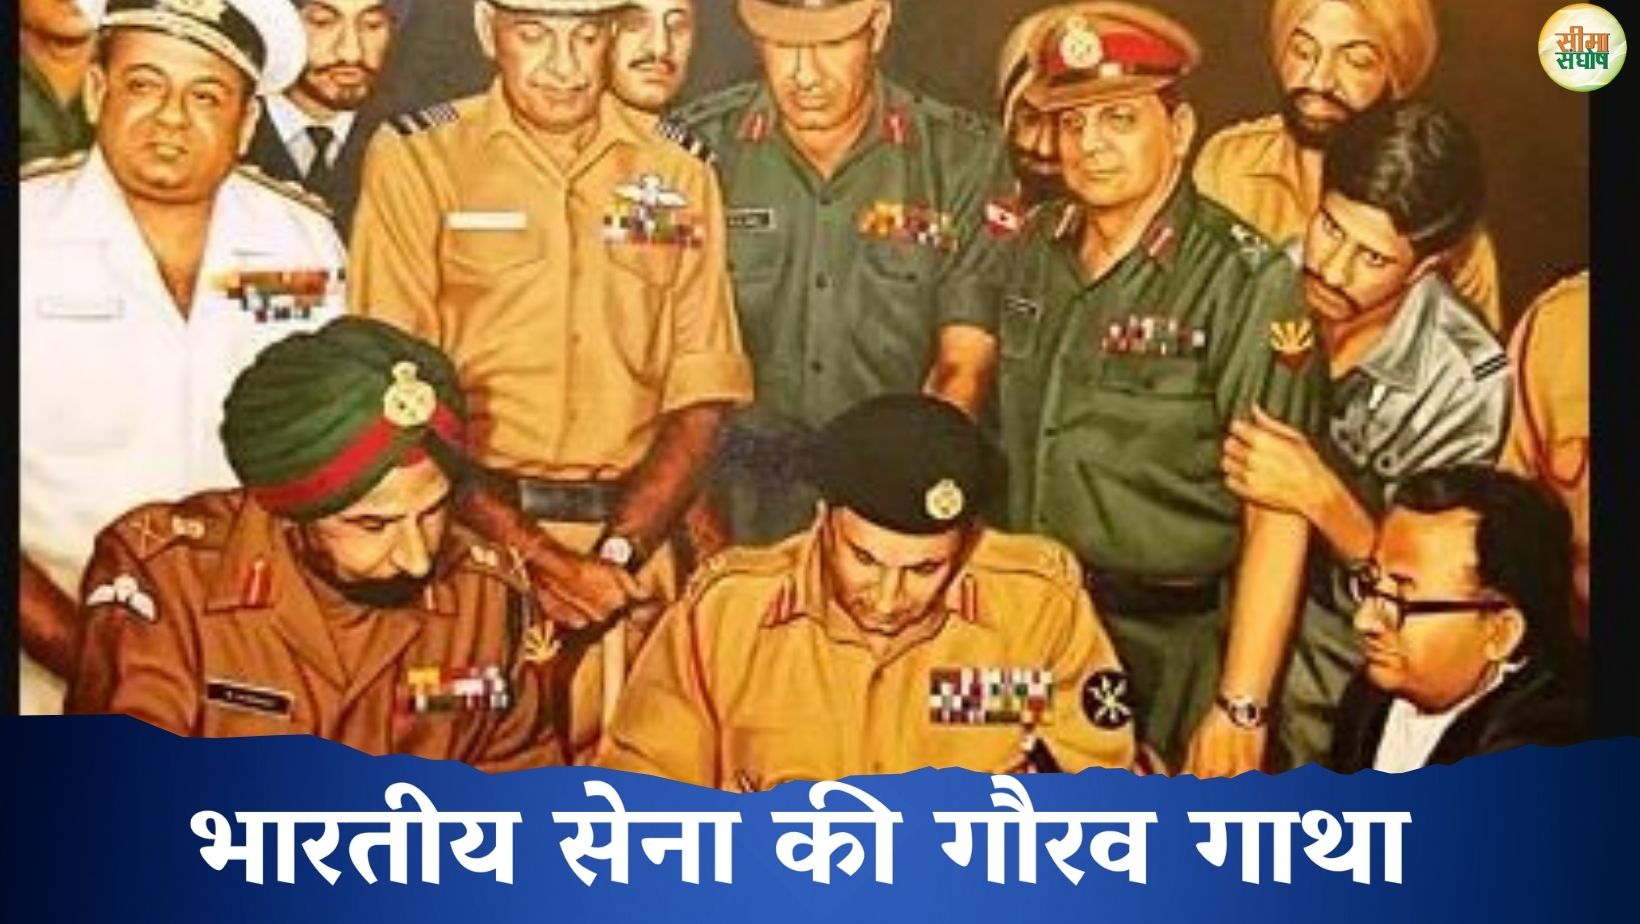 स्वर्णिम विजय – भारतीय सेना की गौरव गाथा